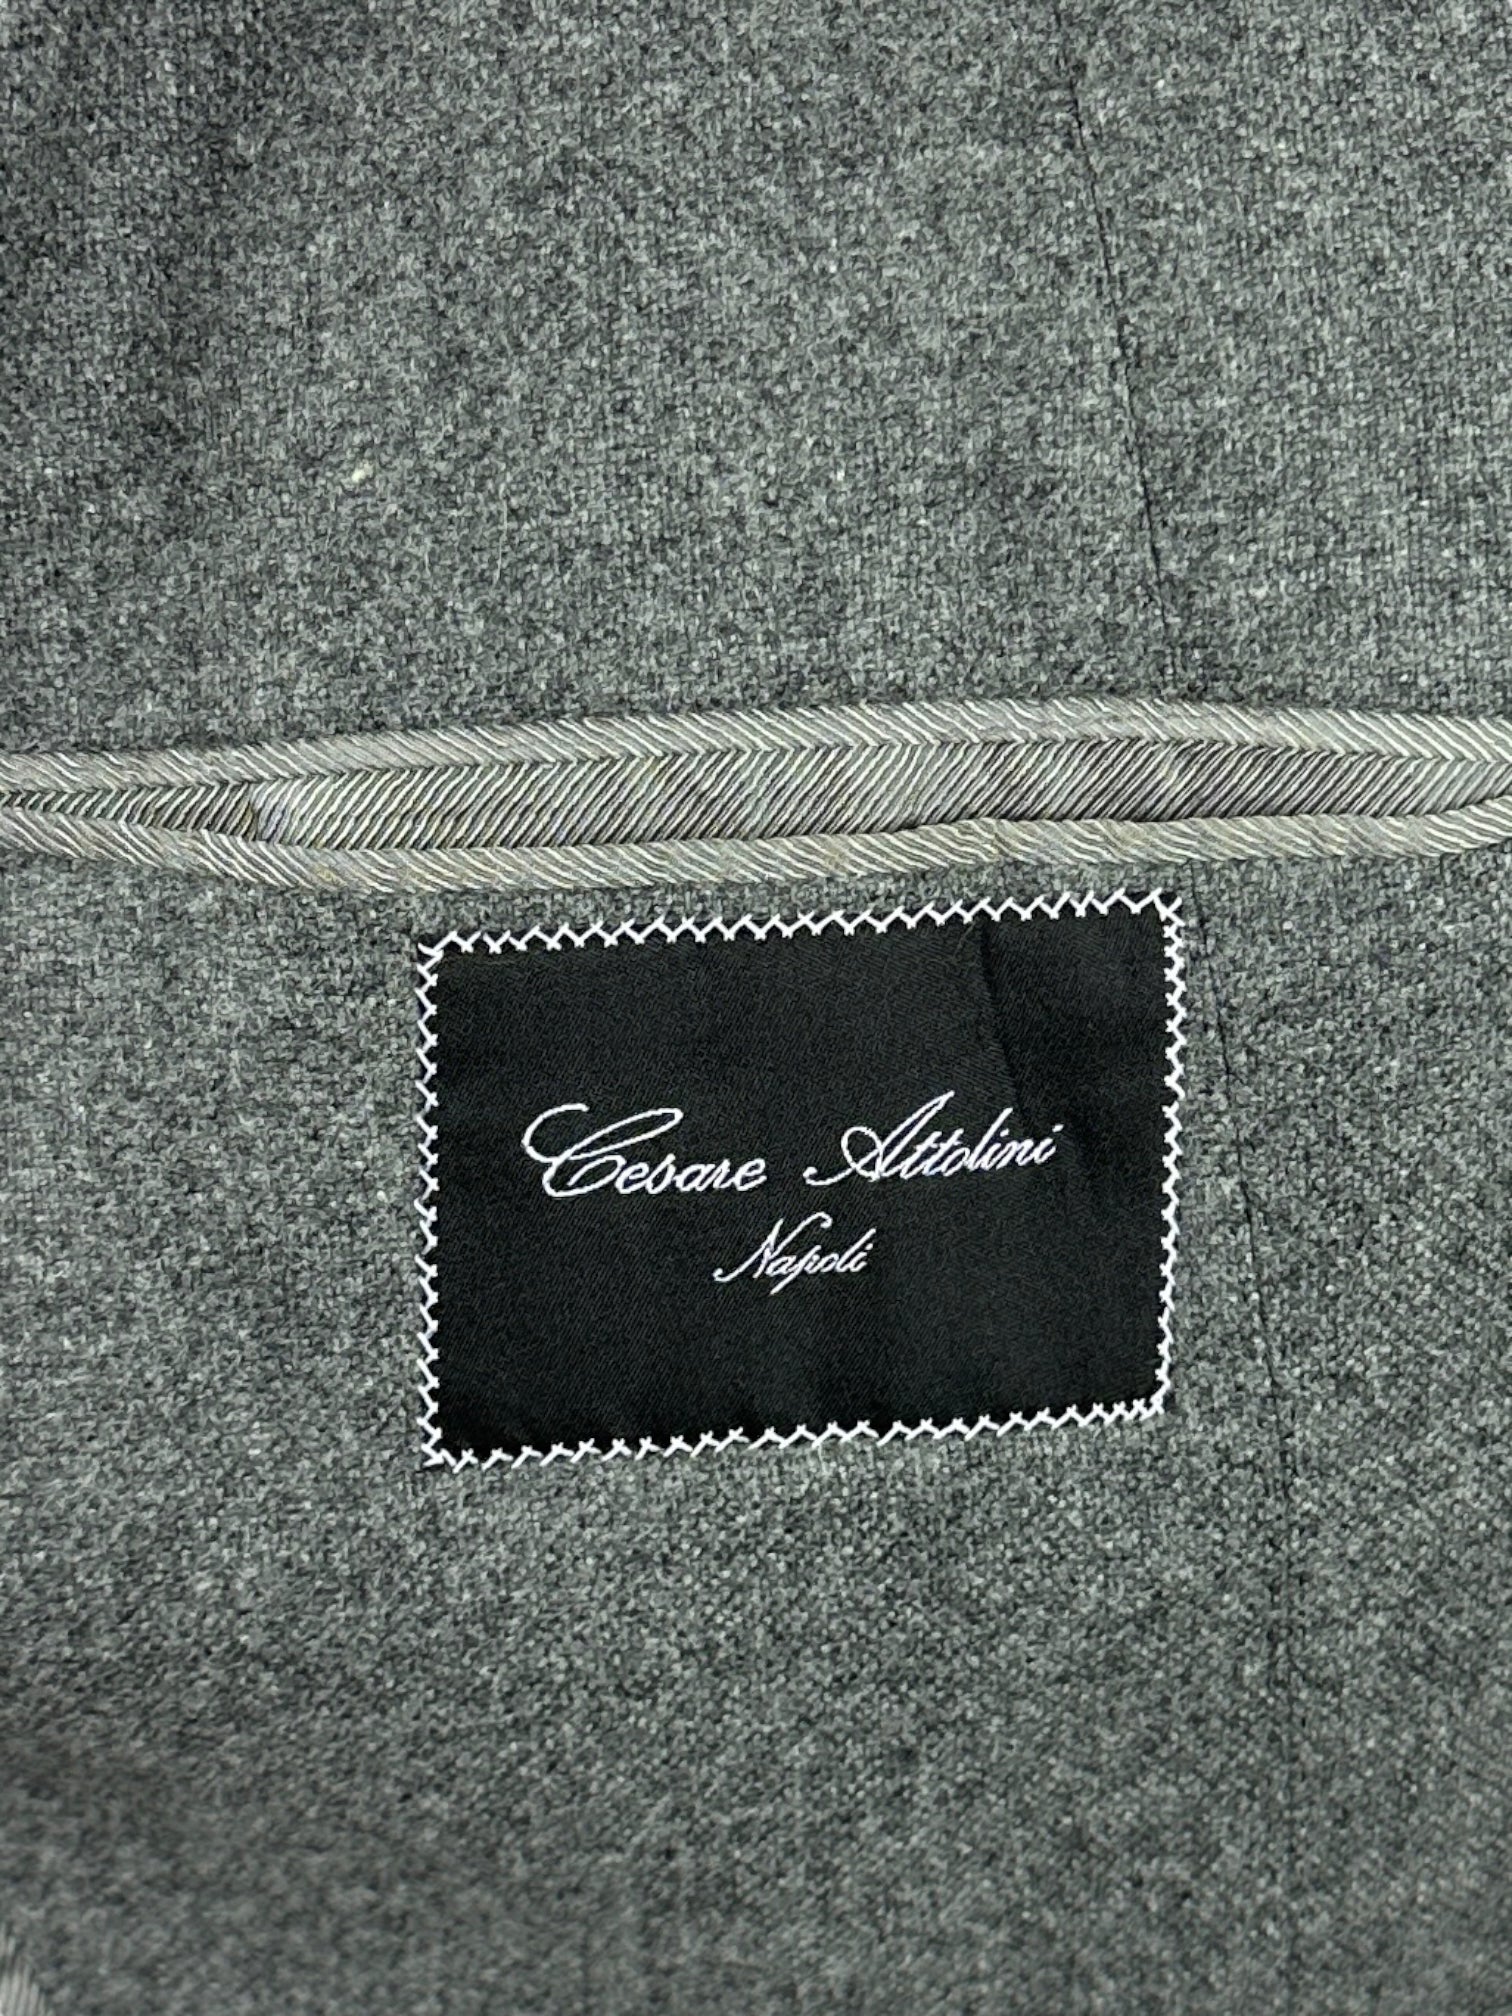 Cesare Attolini Light Grey Cashmere Jacket